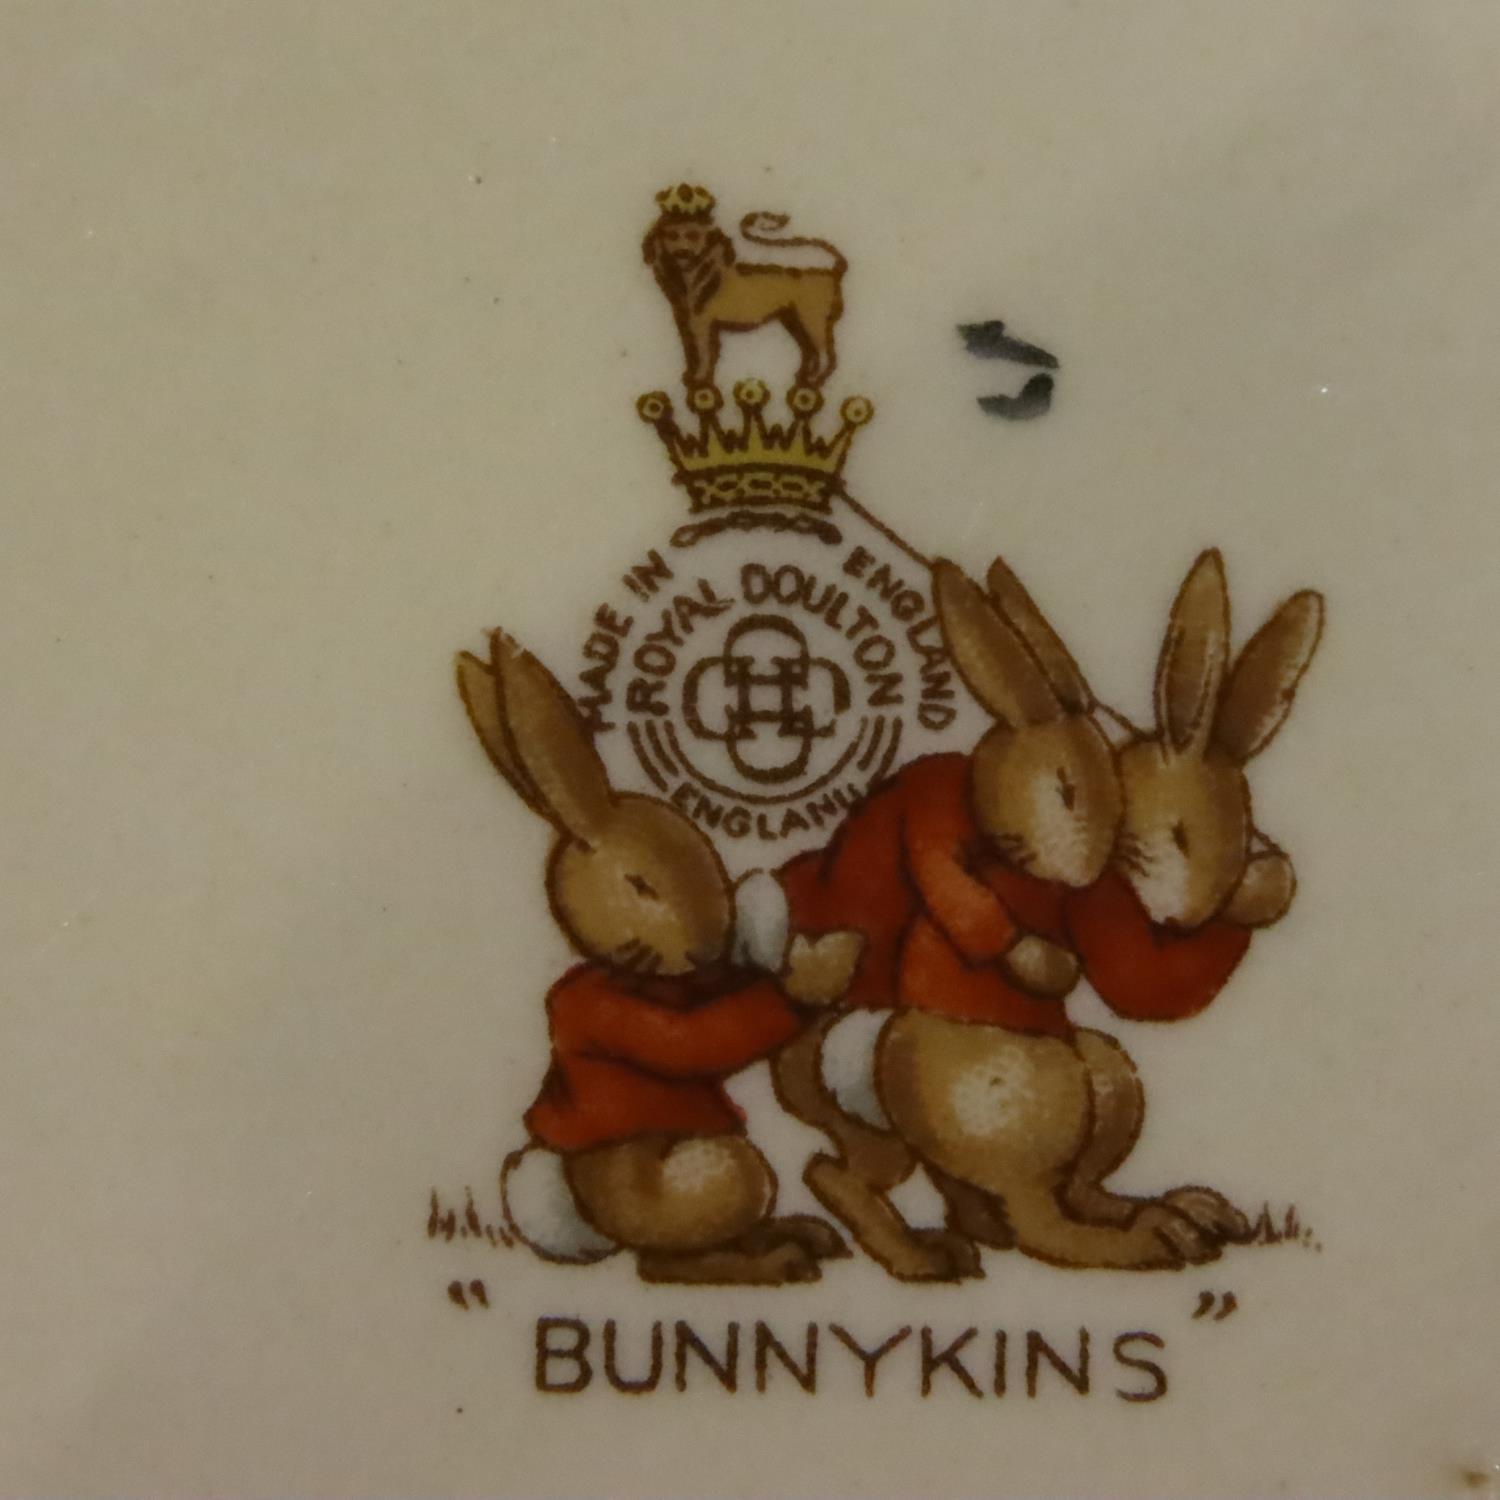 Royal Doulton Bunnykins; clock, six cereal bowls and a money box. No cracks, chips or visible - Image 2 of 2